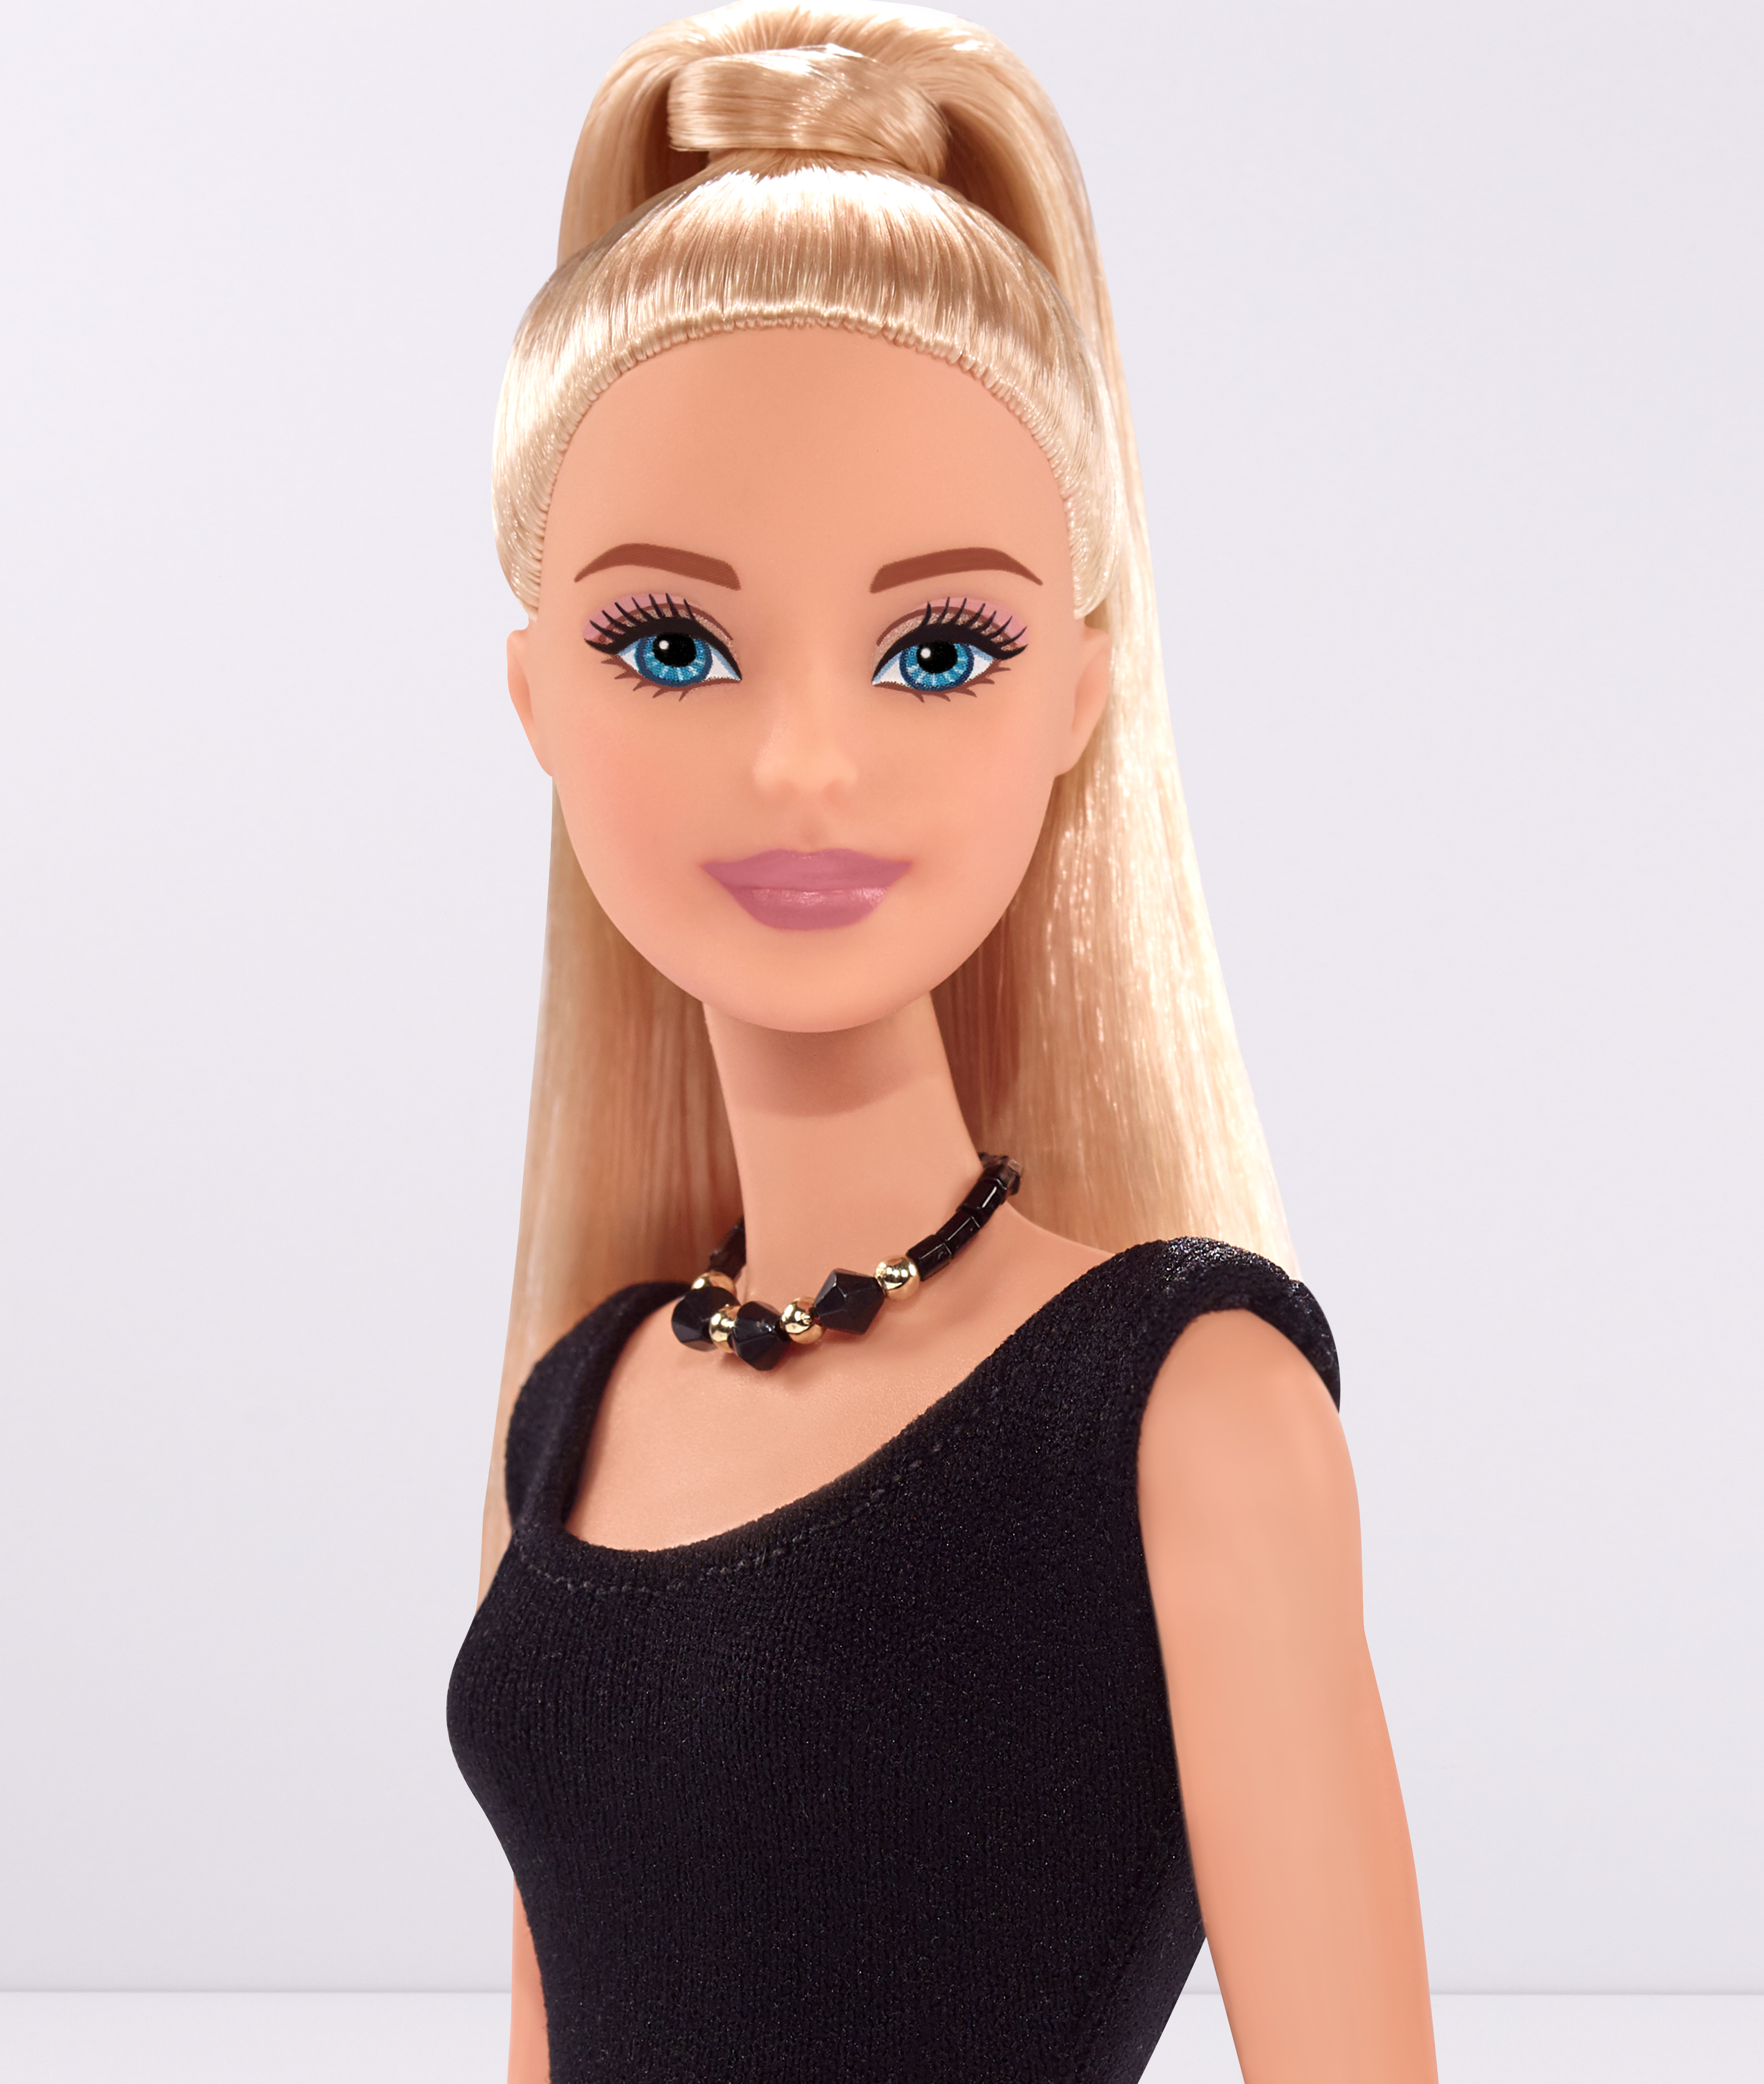 El rosa de labios perfecto tiene nombre y apellidos: M·A·C for Barbie